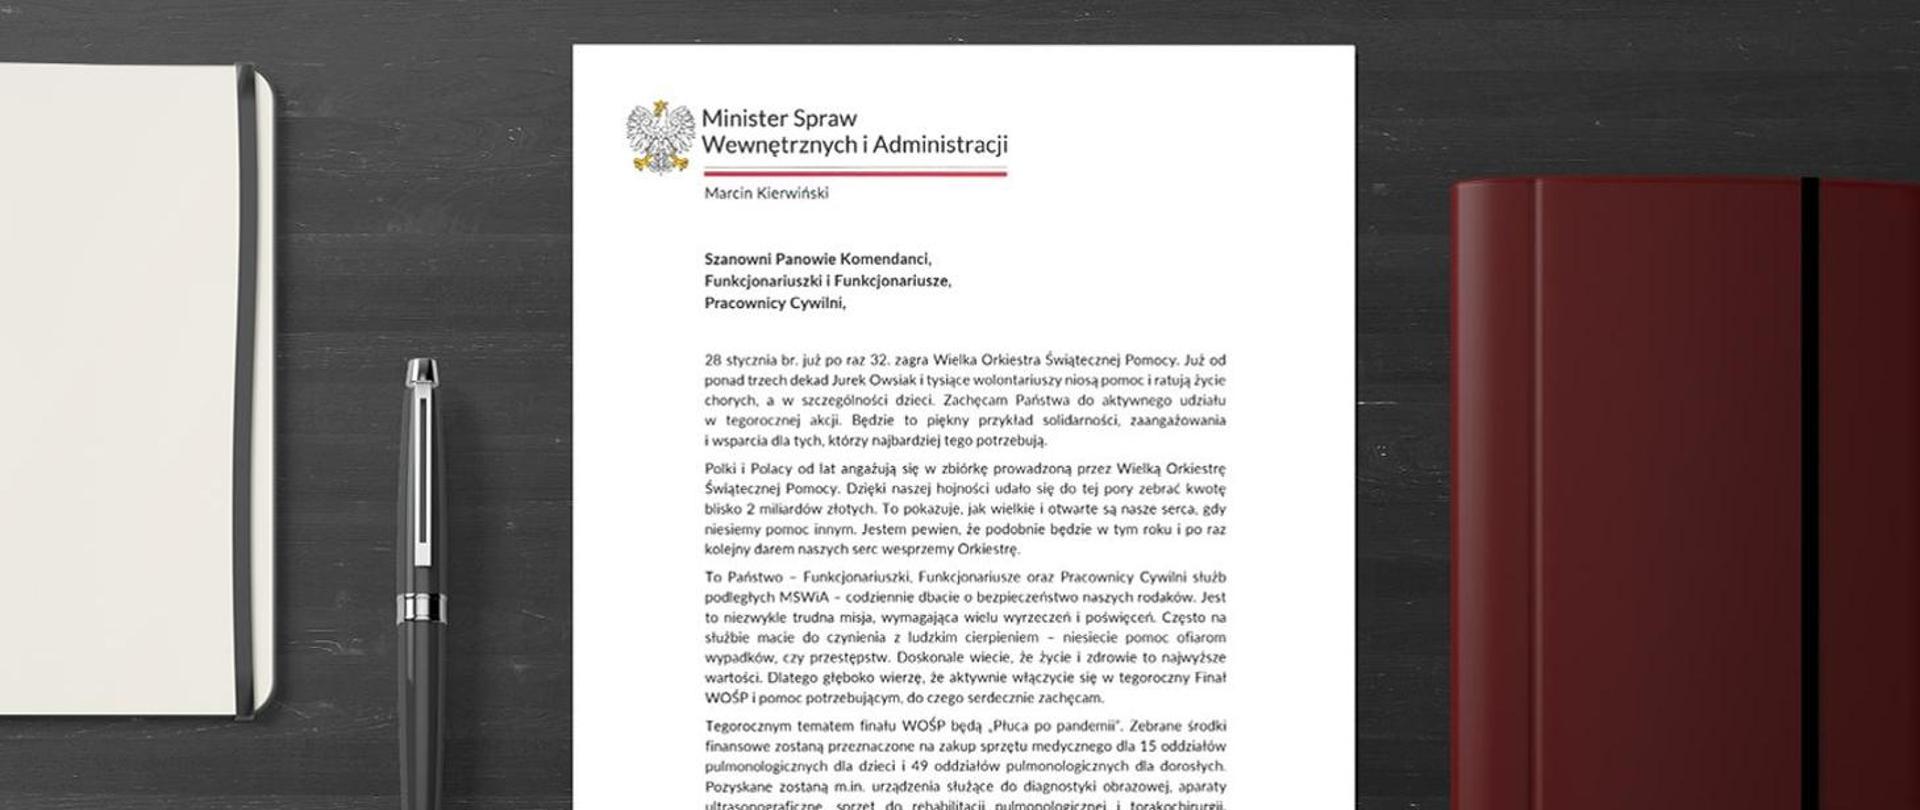 Zdjęcie przedstawia list Ministra Spraw Wewnętrznych i Administracji skierowany do funkcjonariuszy i pracowników cywilnych PSP